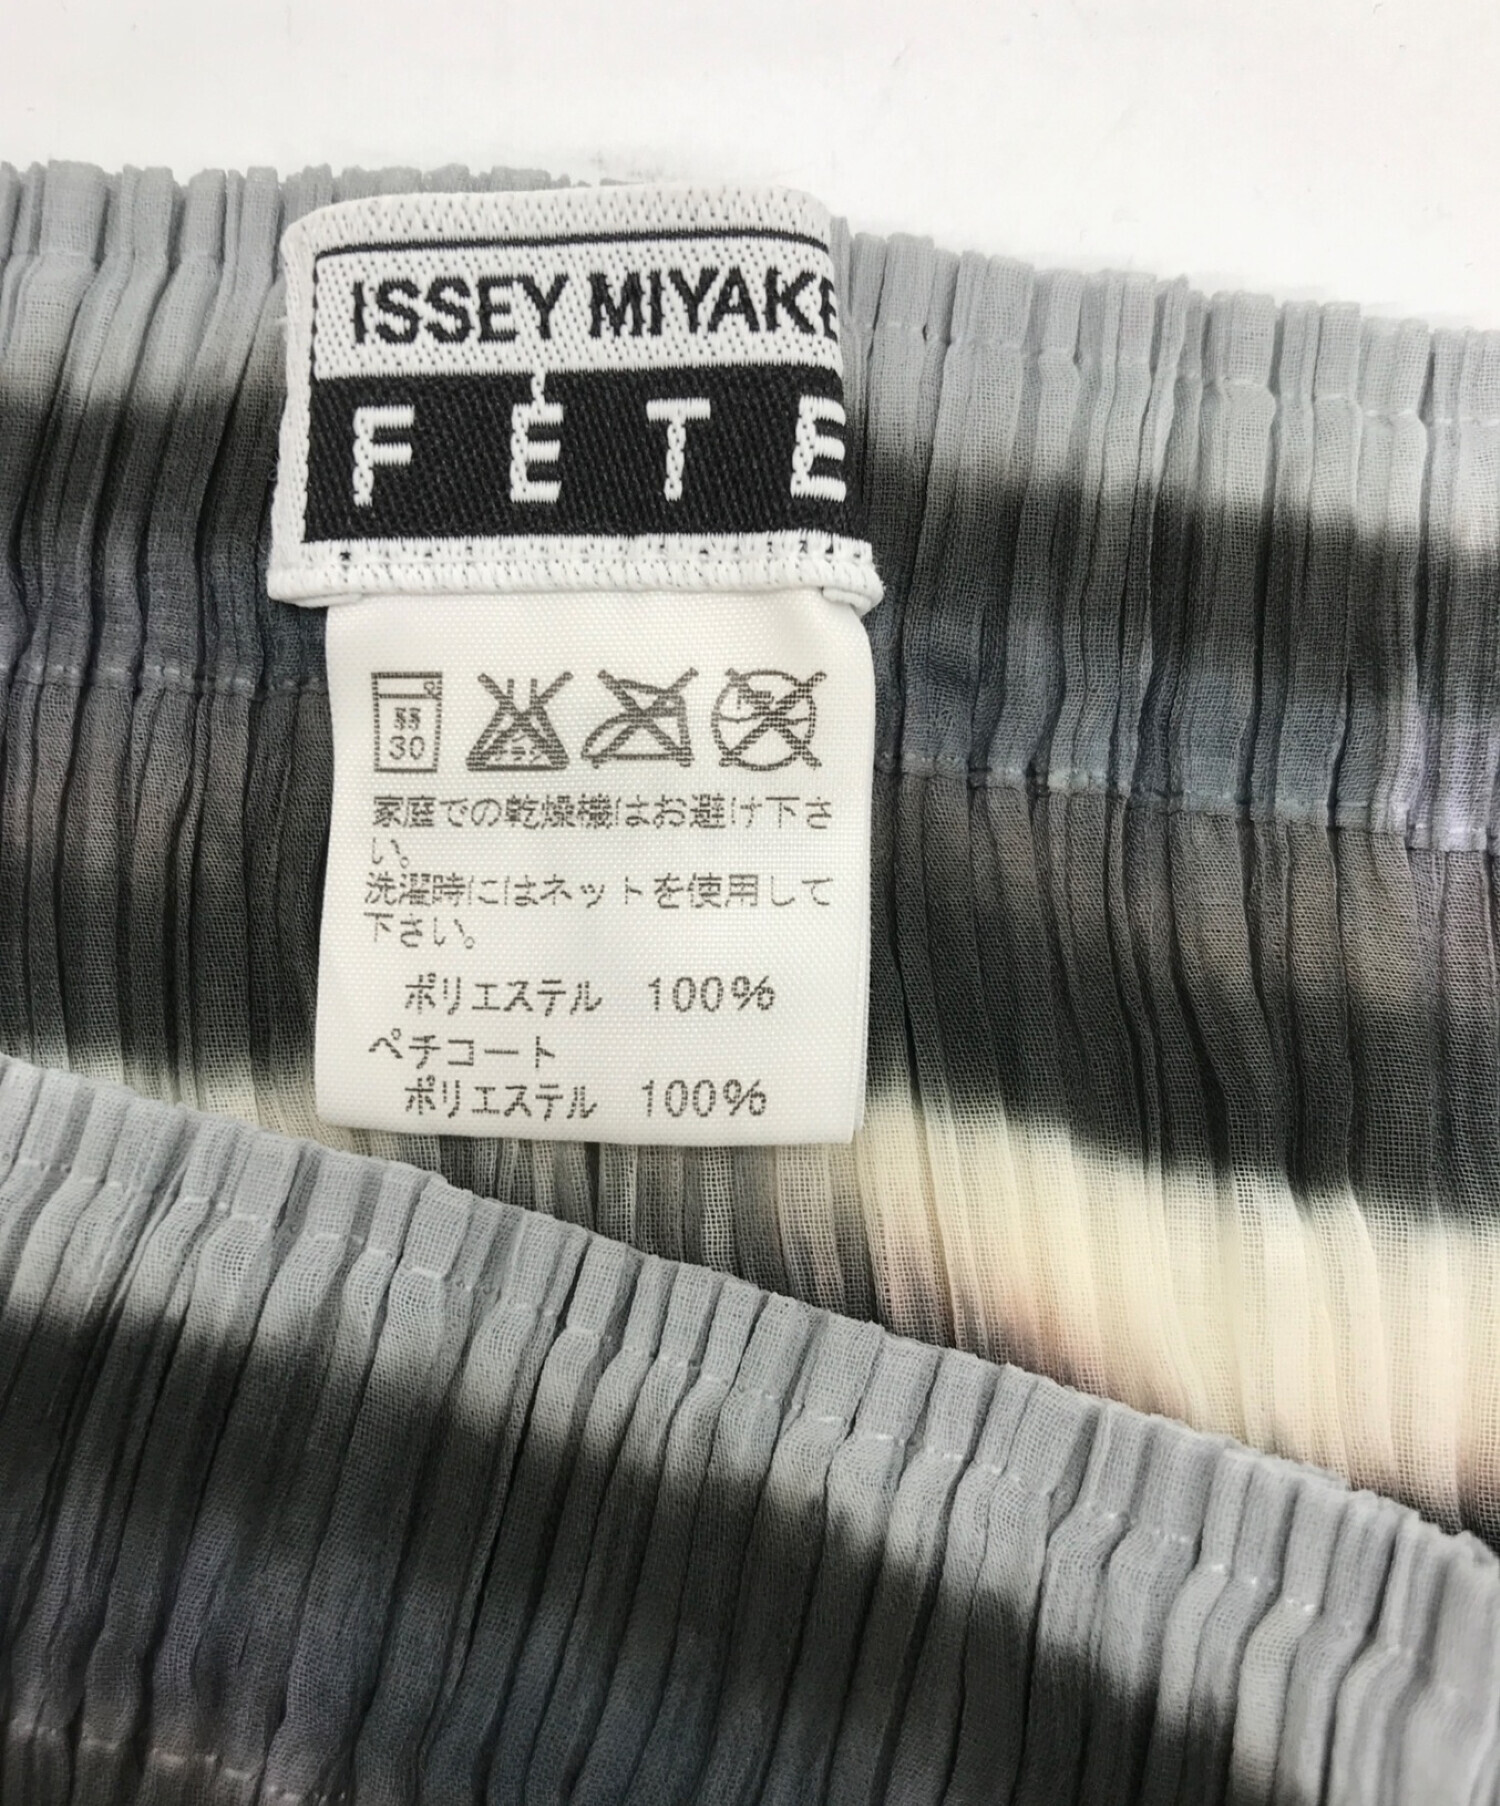 ISSEY MIYAKE FETE (イッセイミヤケフェット) プリーツスカート ブラック×グレー サイズ:3